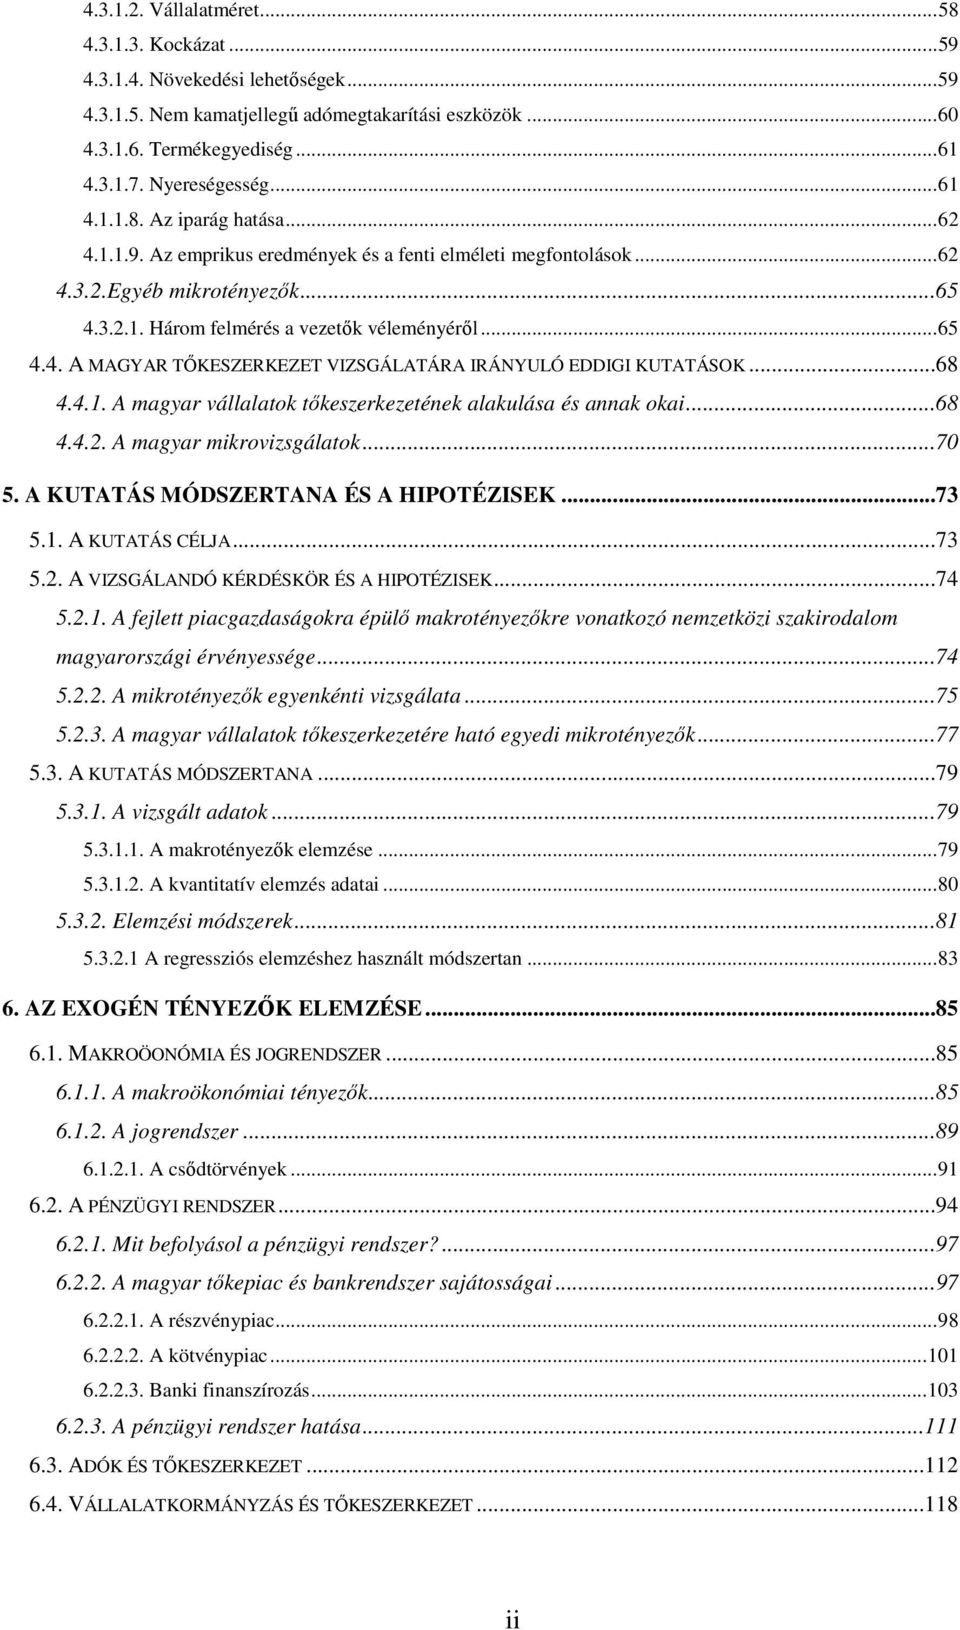 ..68 4.4.1. A magyar vállalatok tıkeszerkezetének alakulása és annak okai...68 4.4.2. A magyar mikrovizsgálatok...70 5. A KUTATÁS MÓDSZERTANA ÉS A HIPOTÉZISEK...73 5.1. A KUTATÁS CÉLJA...73 5.2. A VIZSGÁLANDÓ KÉRDÉSKÖR ÉS A HIPOTÉZISEK.